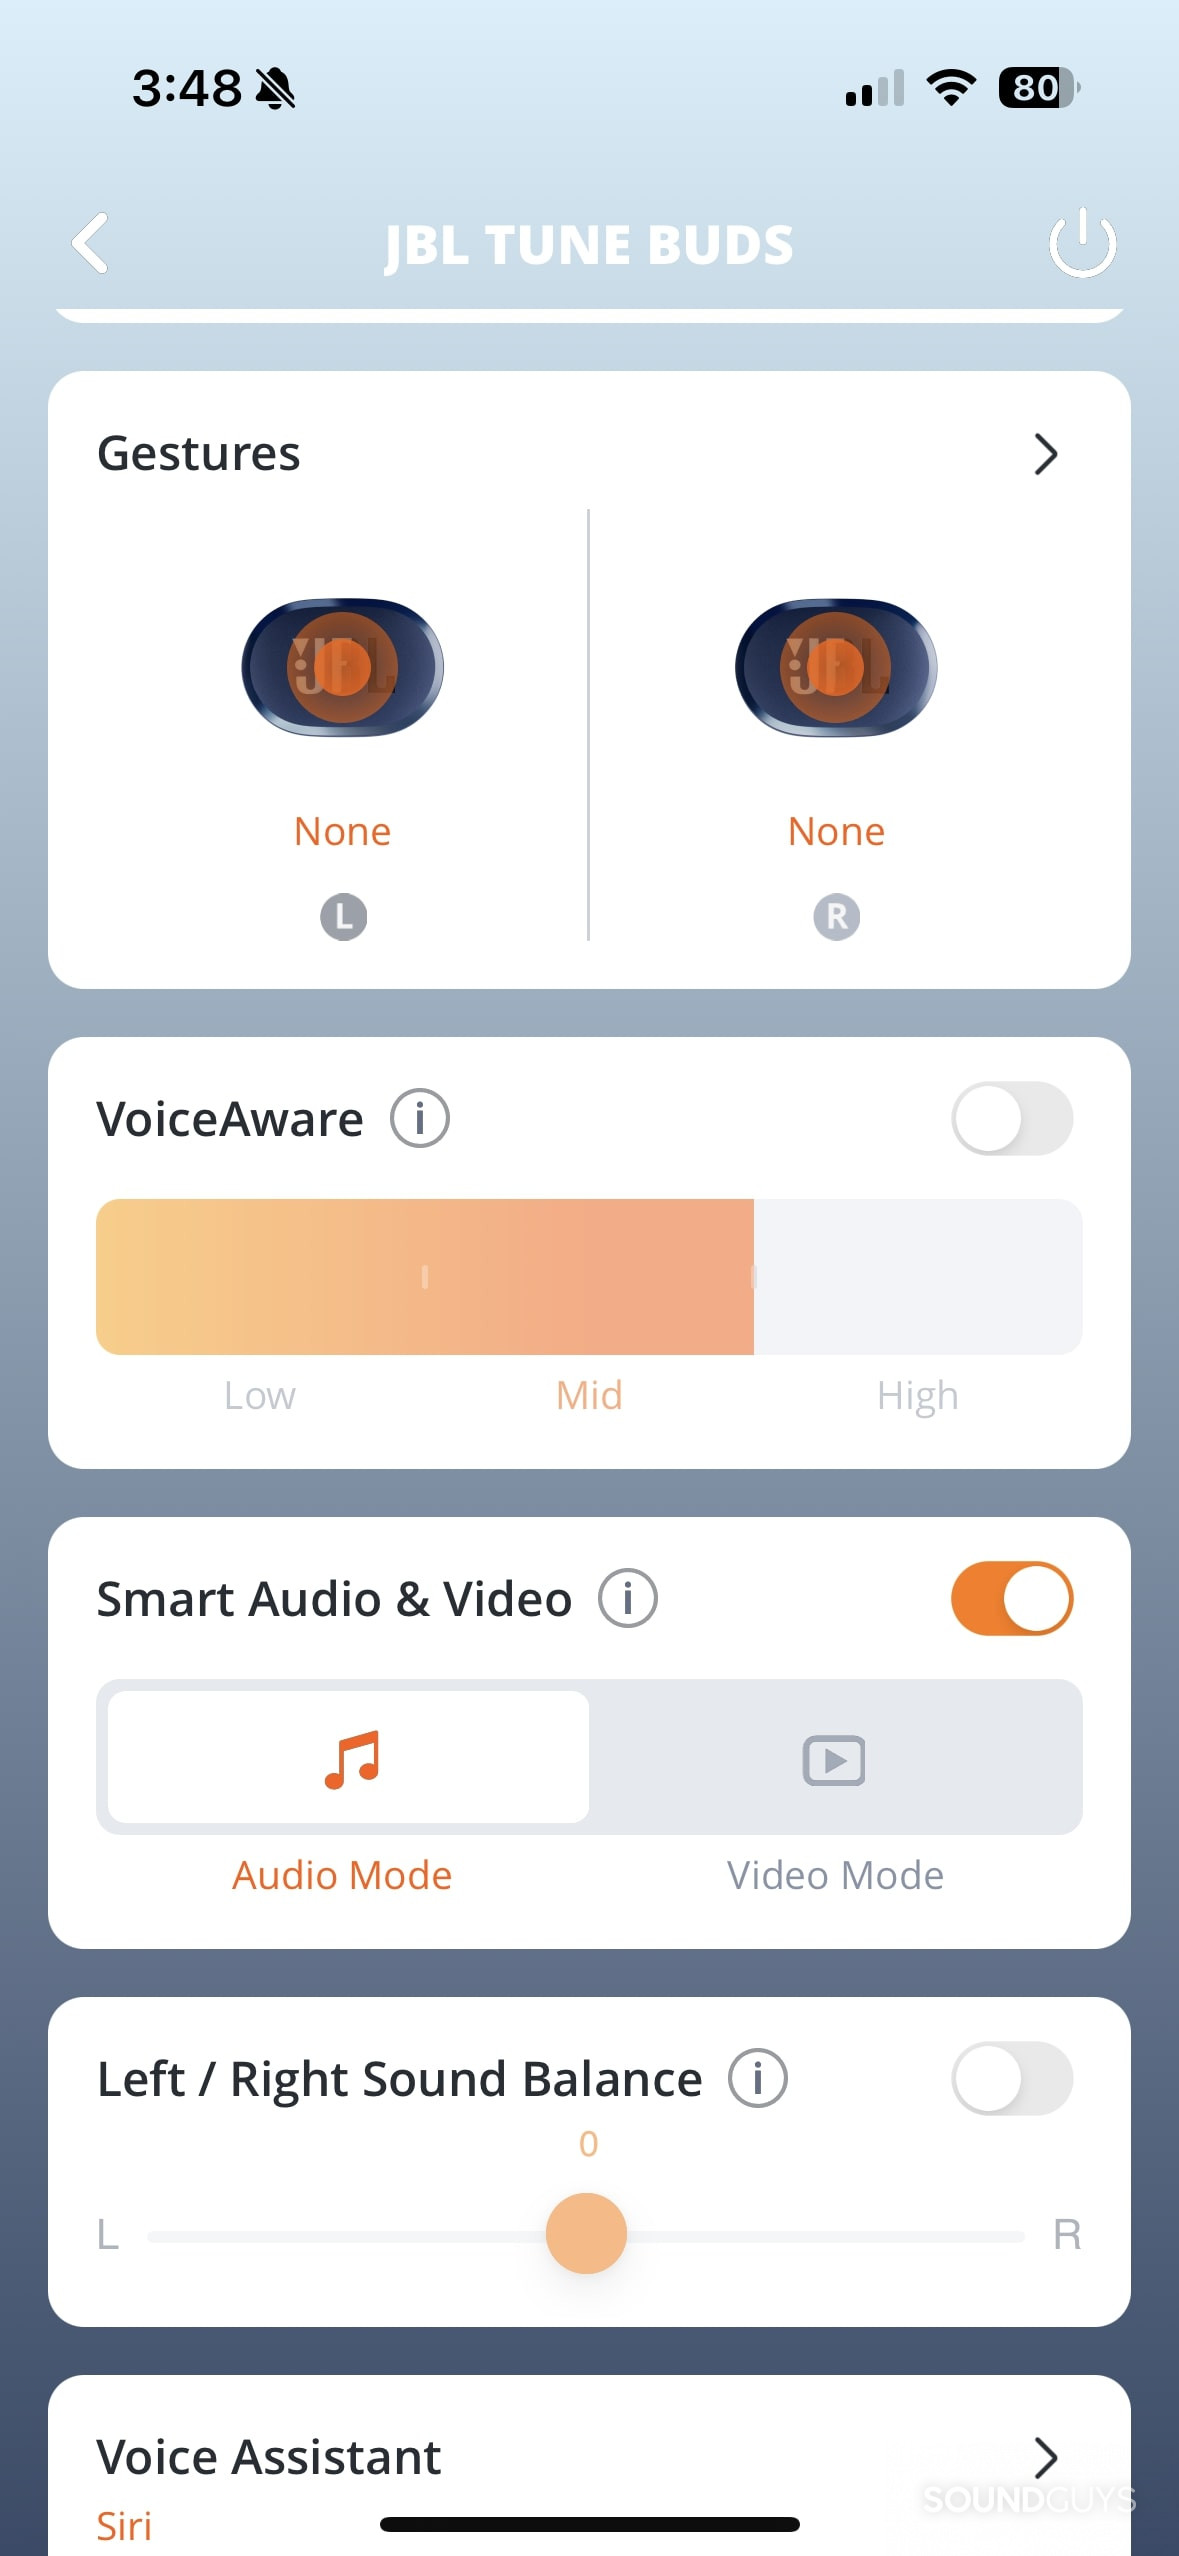 JBL Tune Buds Headphones app gesture controls.